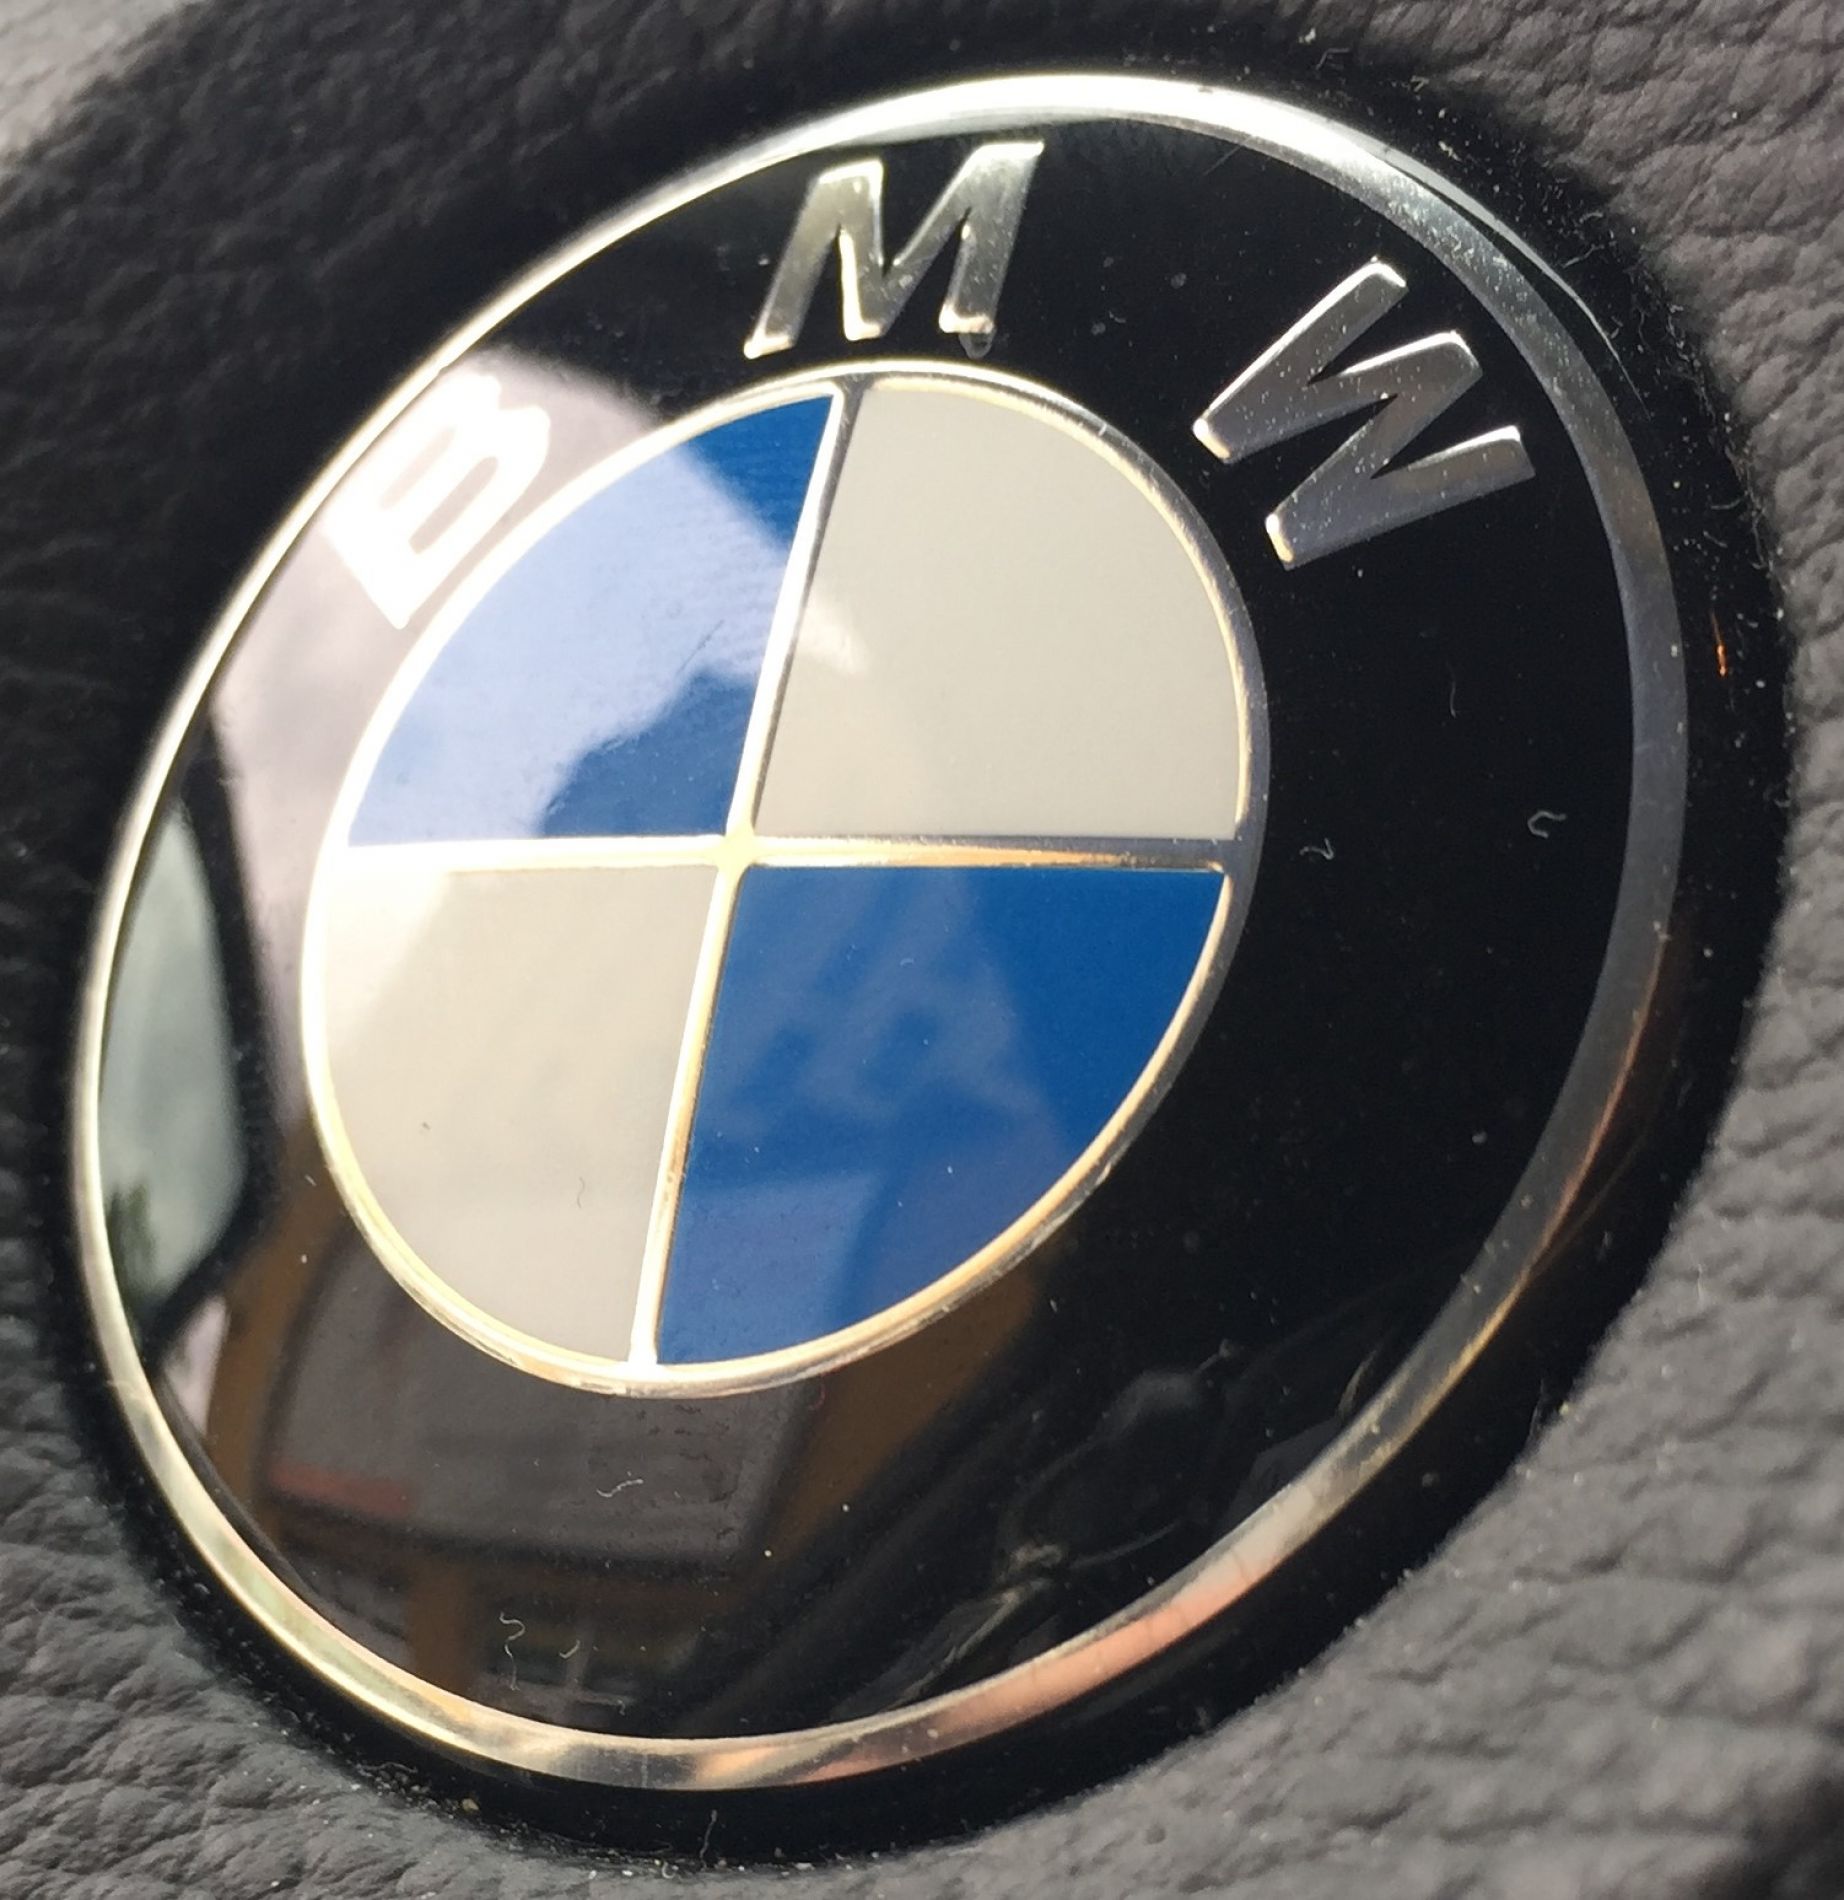 Dorobienie klucza do BMW X3 z 2017 roku